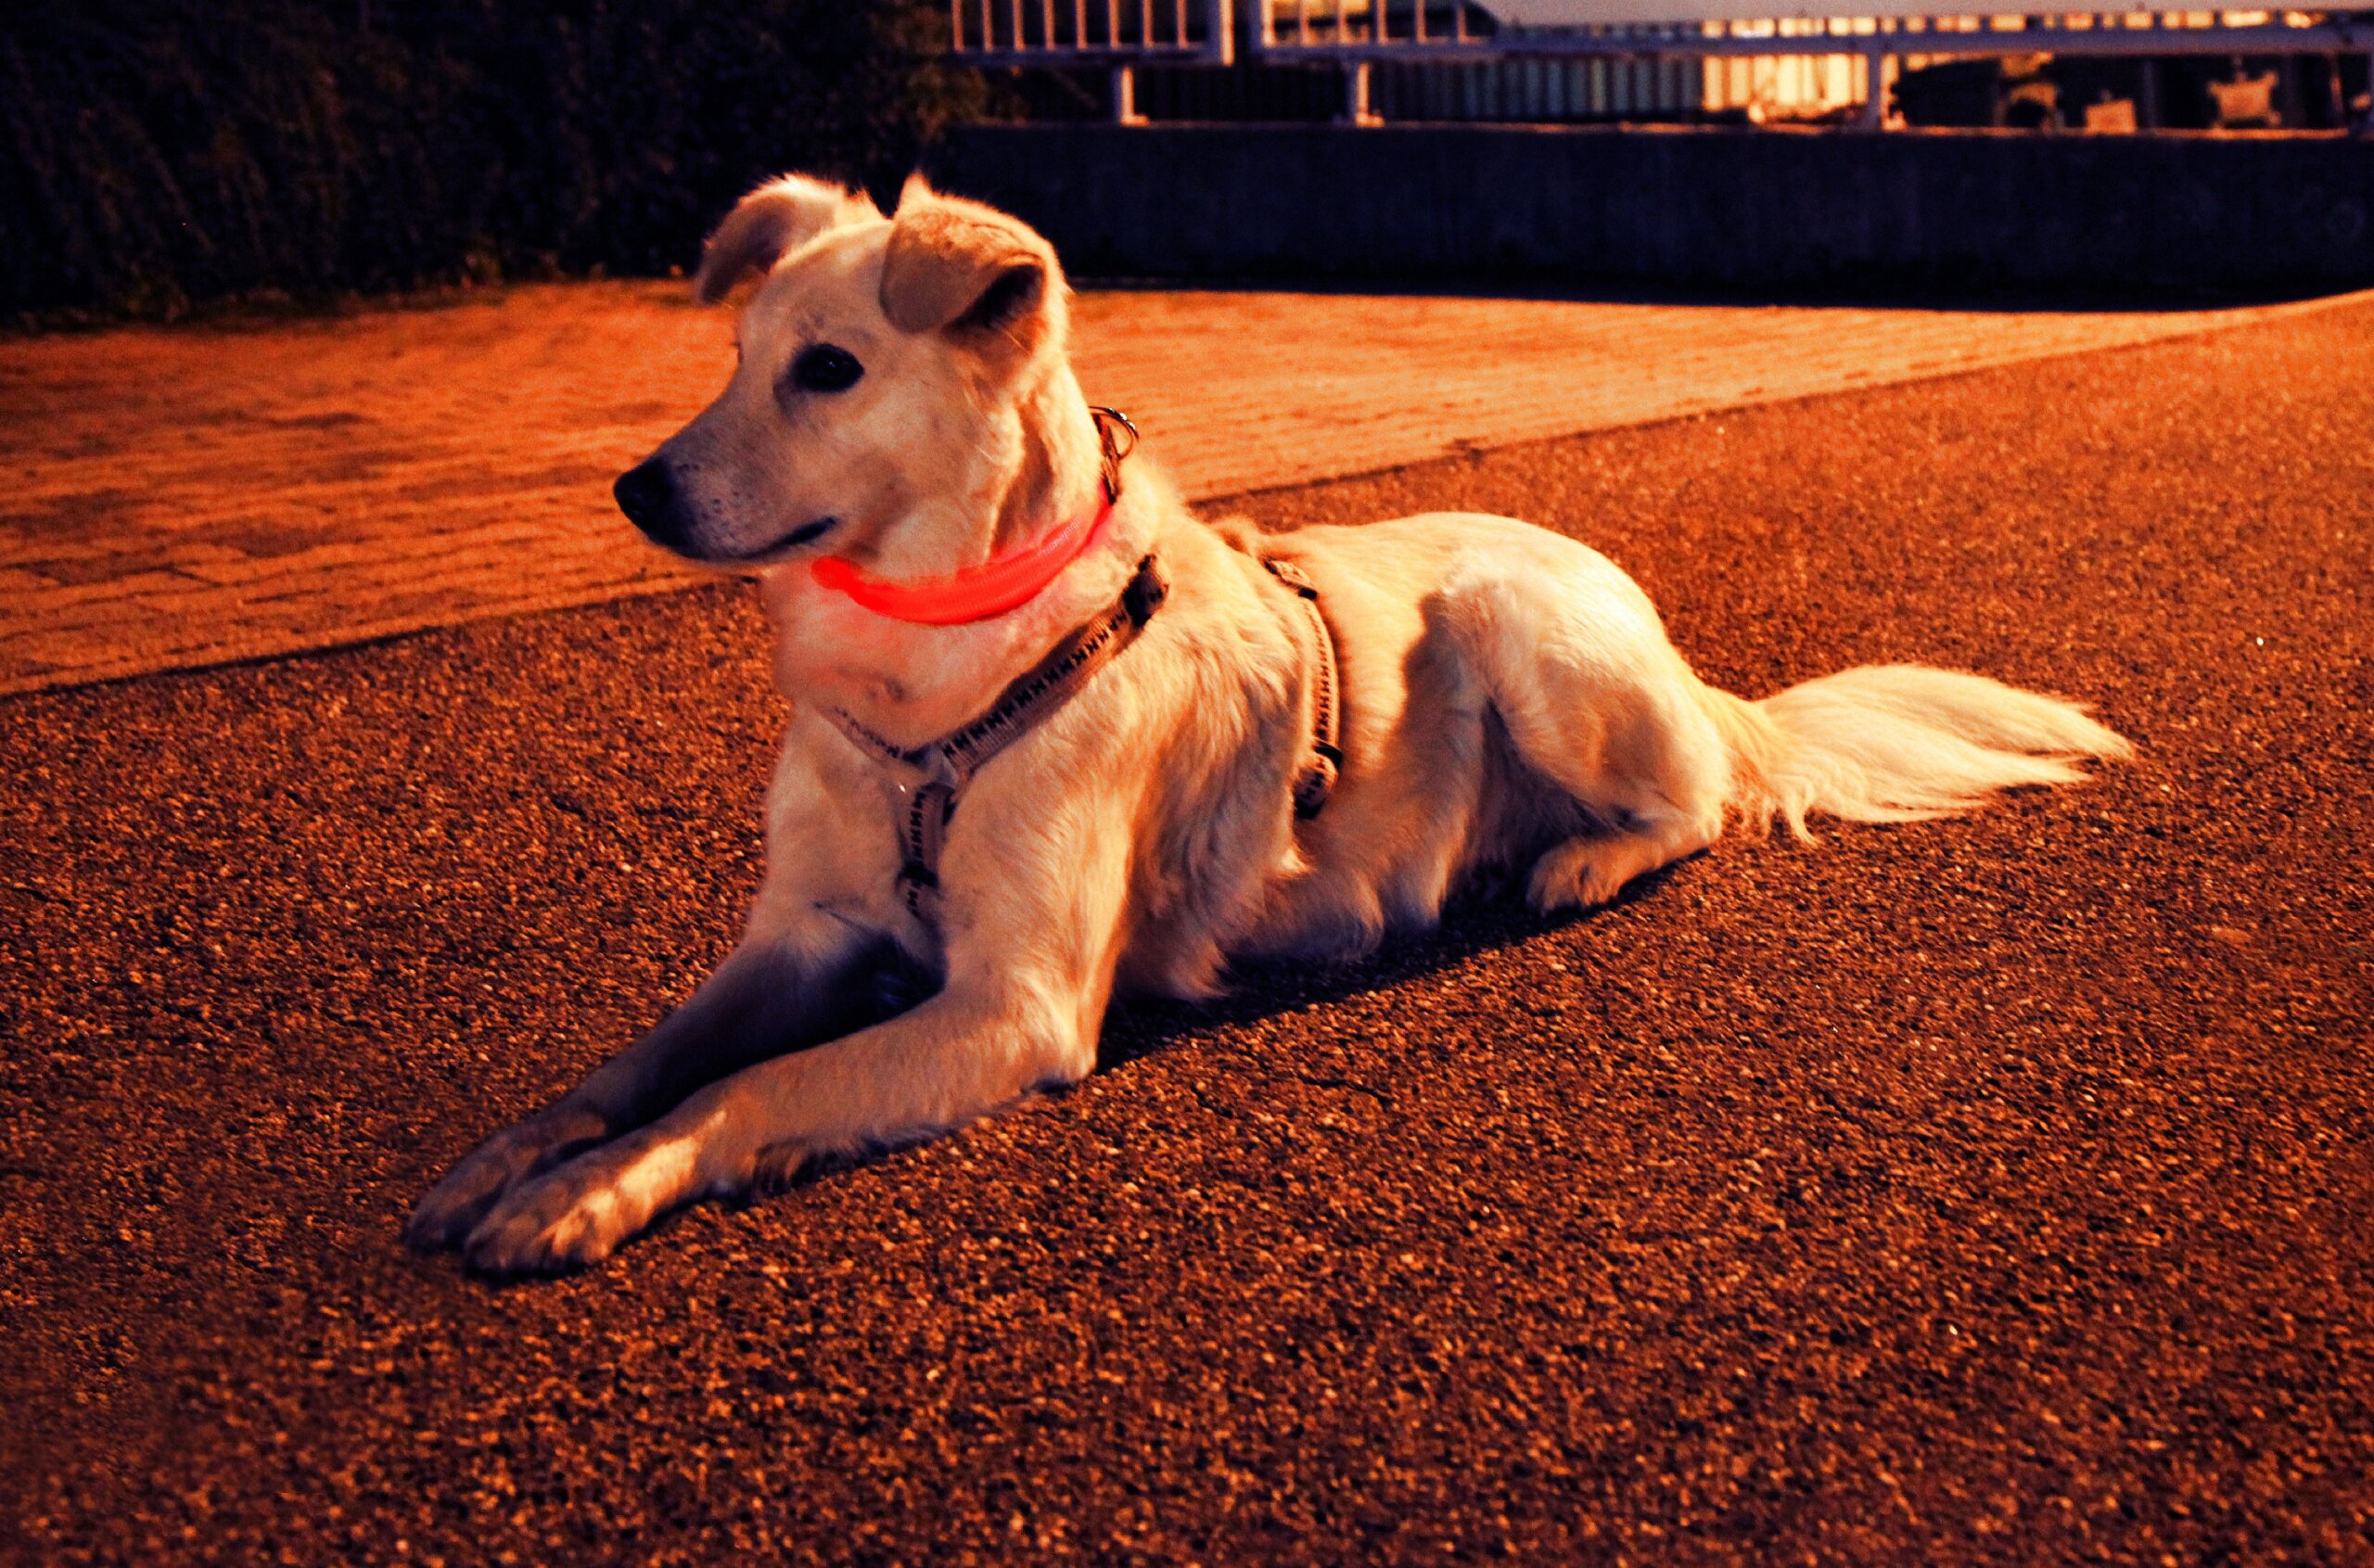 Hund mit Leuchthalsband